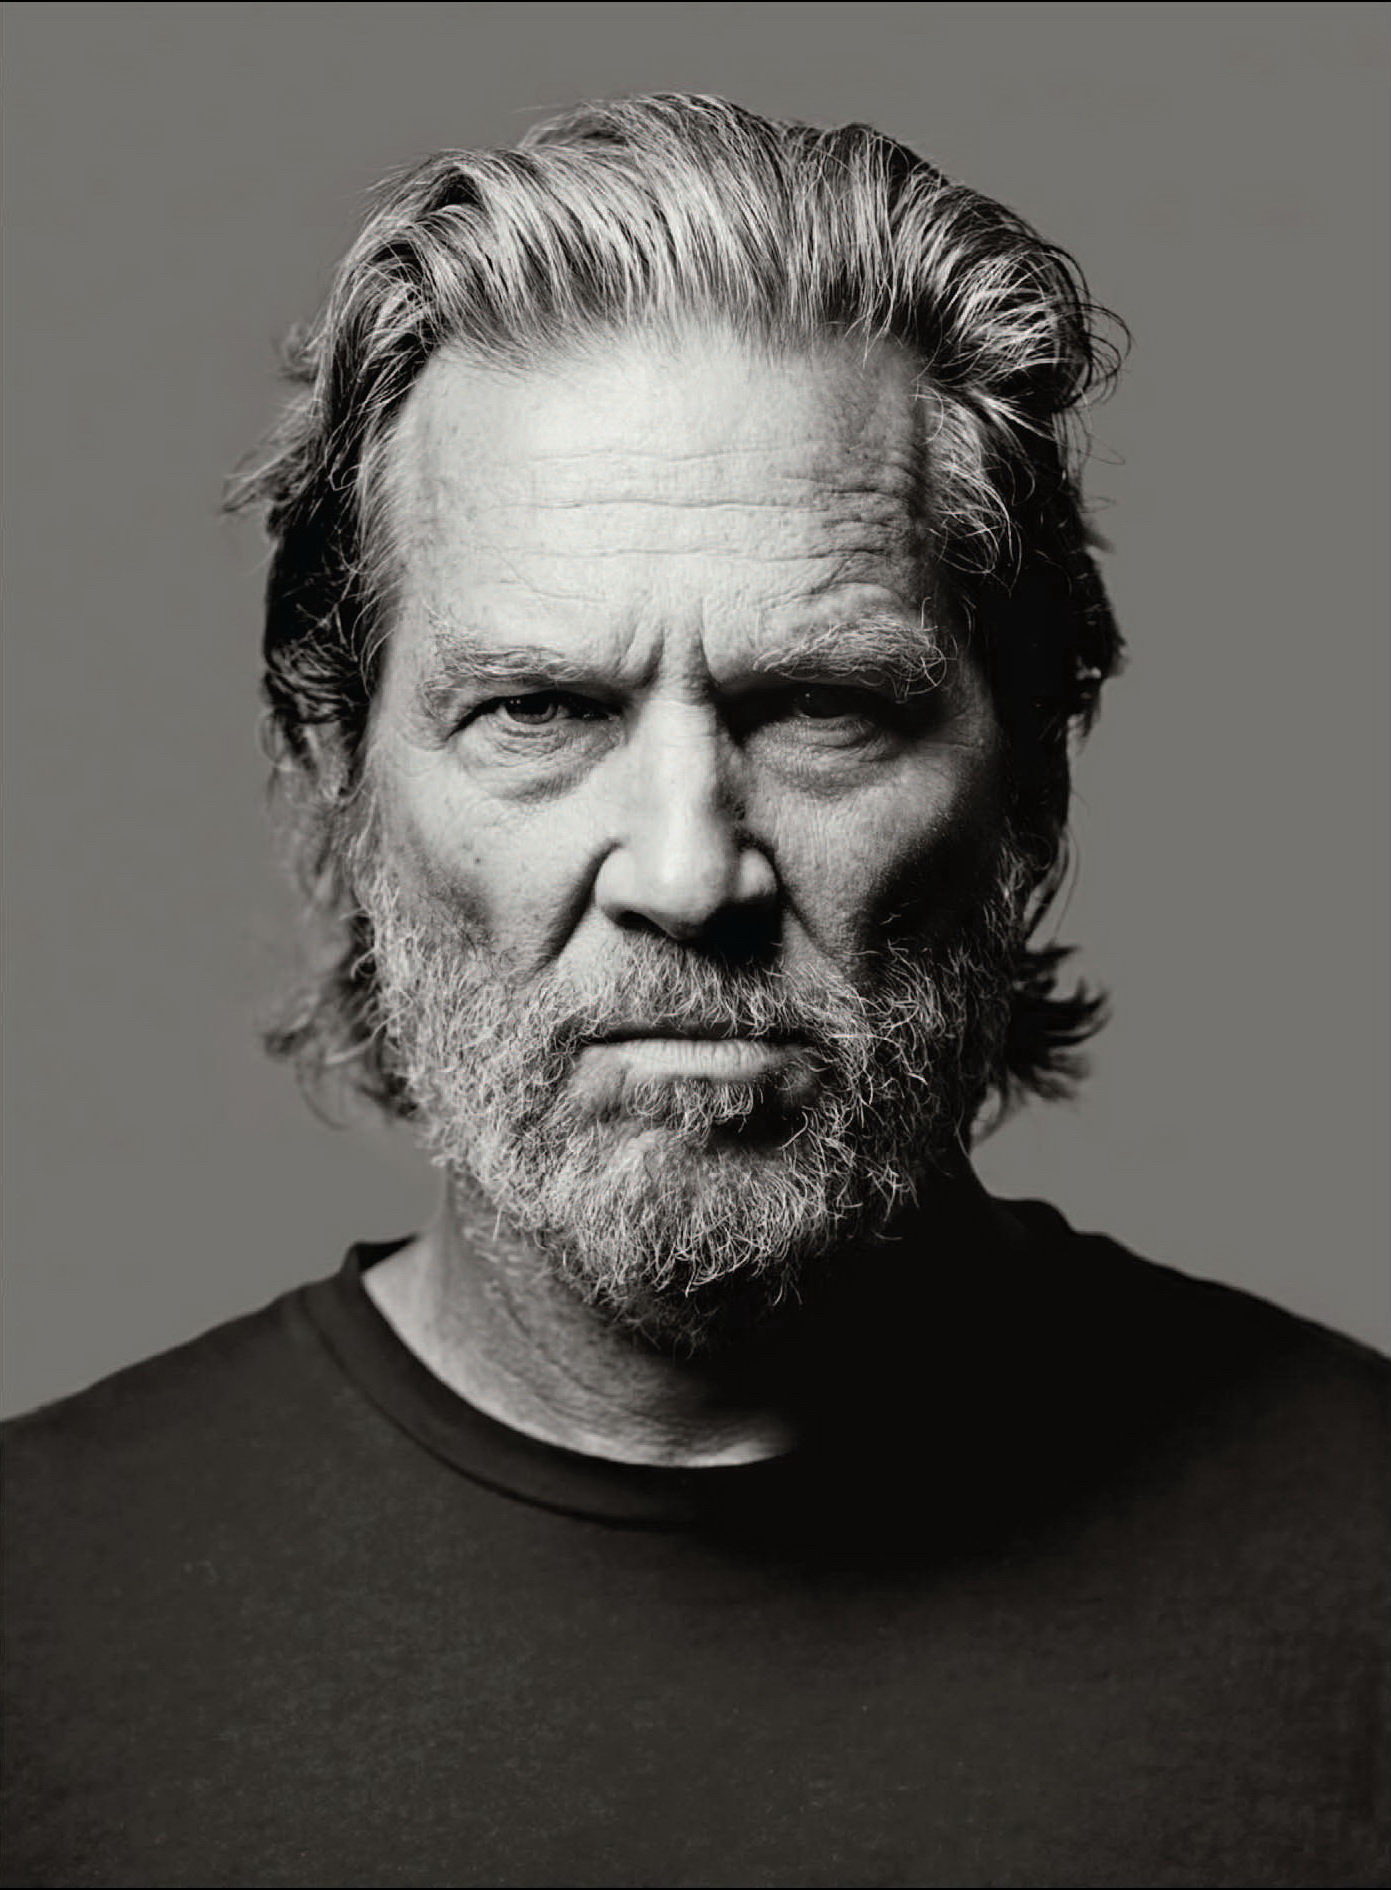 Jeff Bridges photo 7 of 42 pics, wallpaper - photo #230007 - ThePlace2